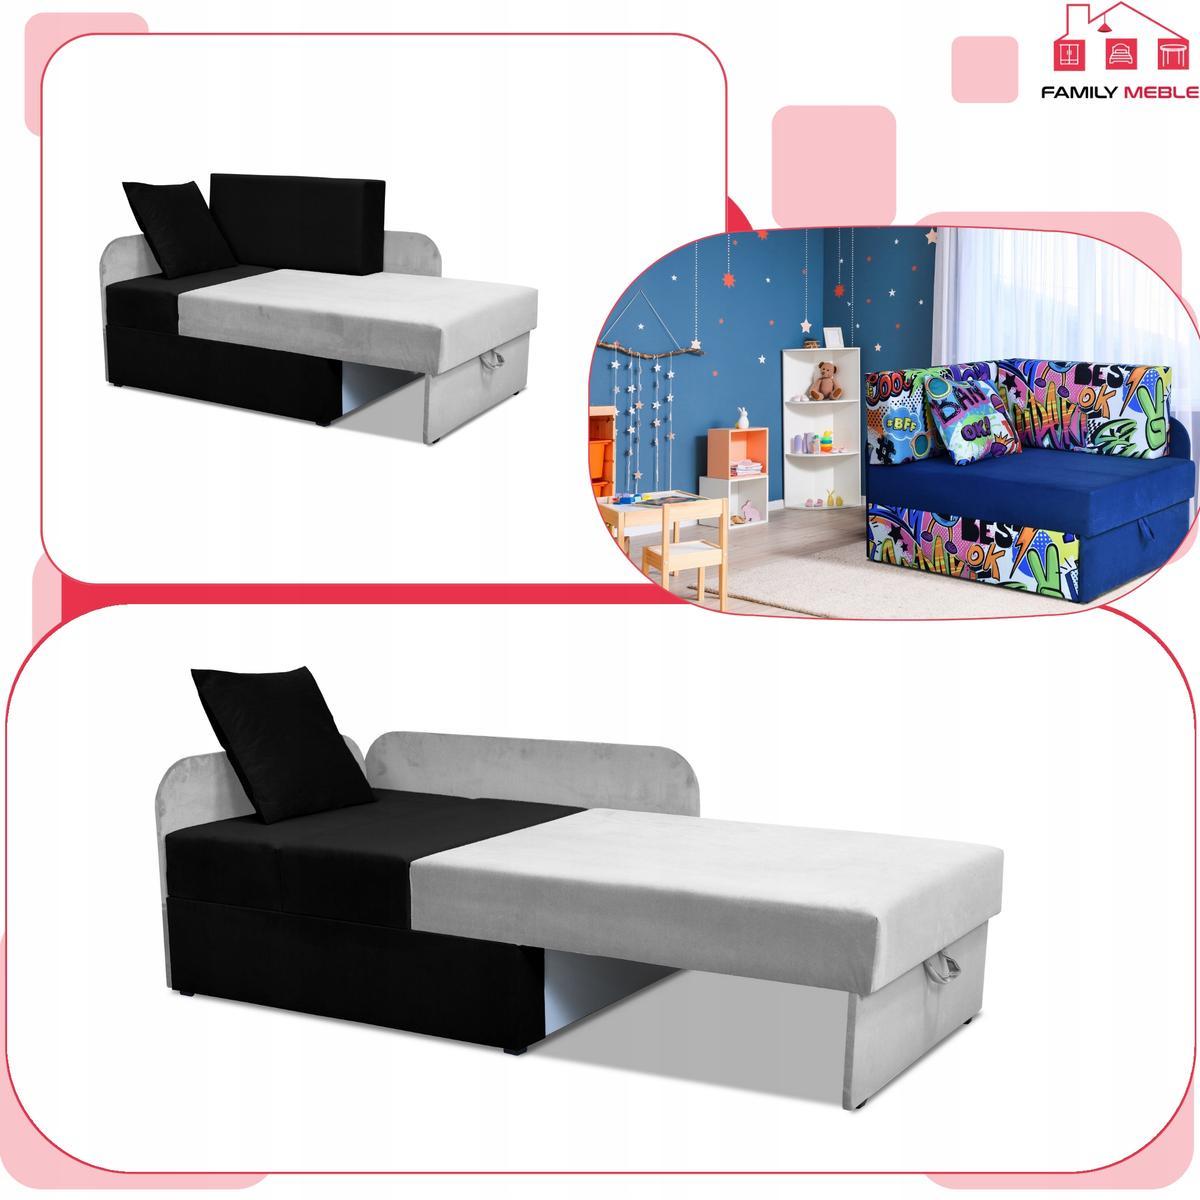 Narożnik DENIS Duo 80 x 200 cm biały z czarnymi poduchami rozkładany dla dziecka  5 Full Screen